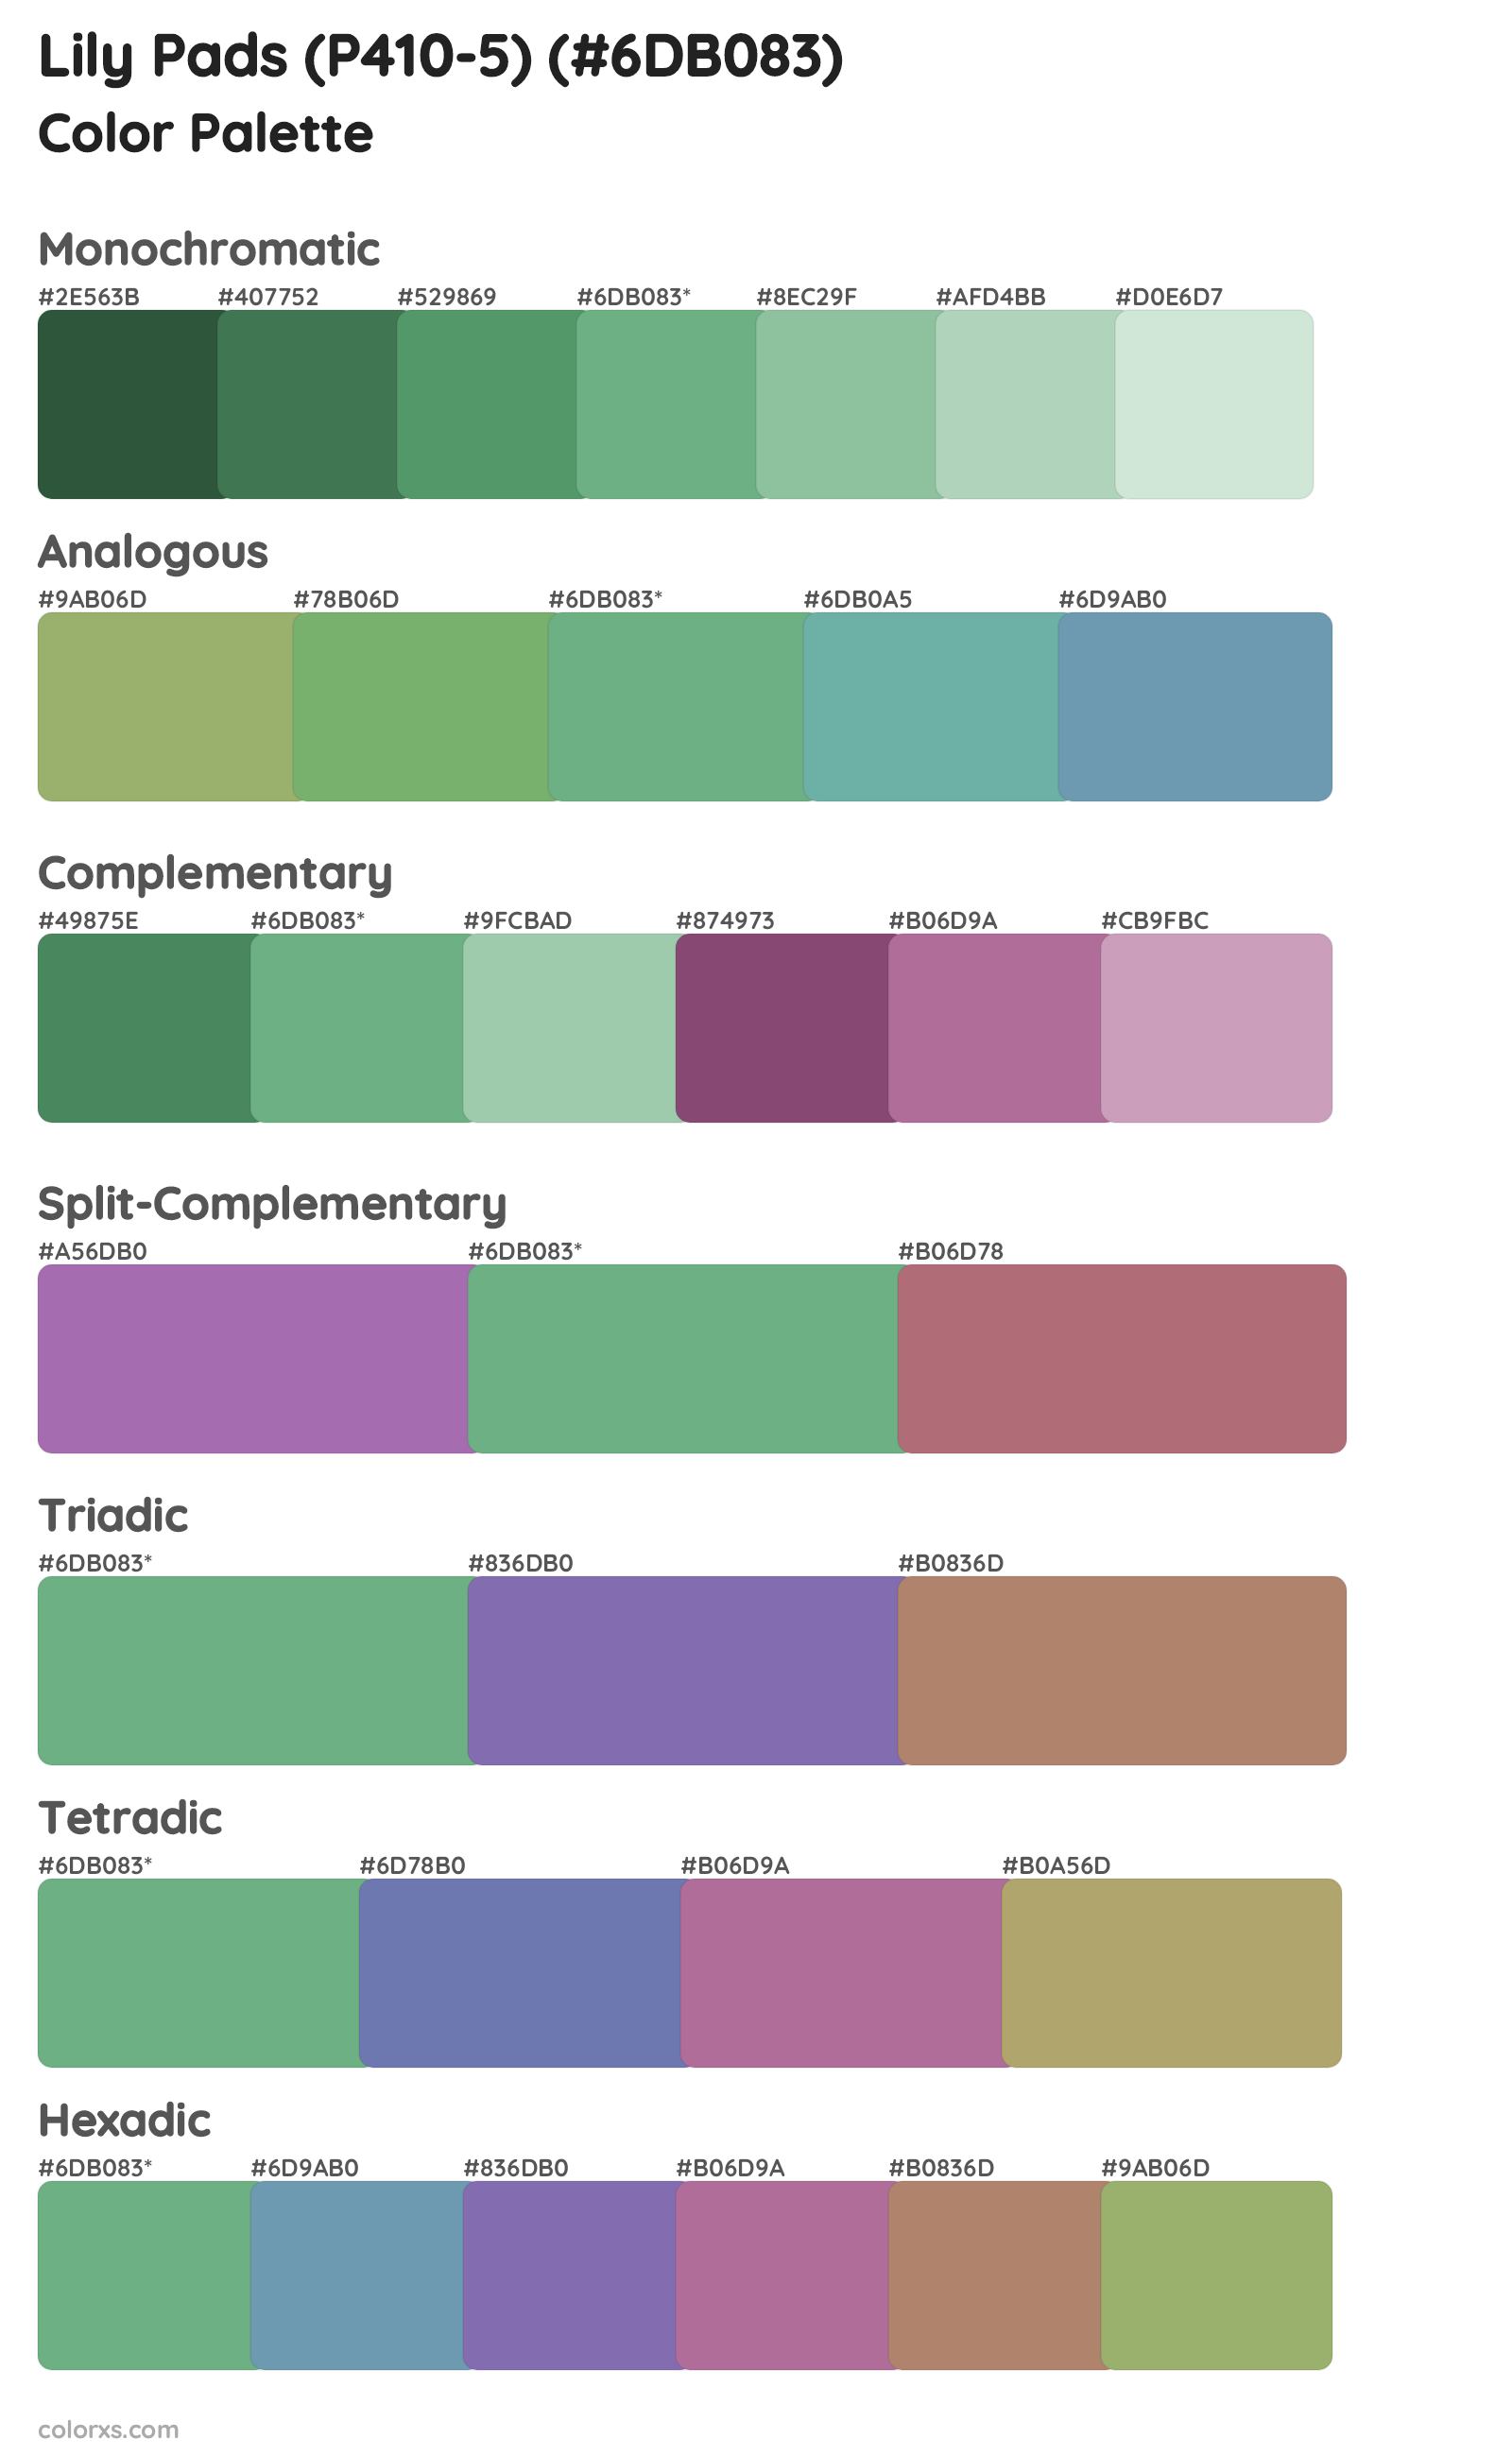 Lily Pads (P410-5) Color Scheme Palettes